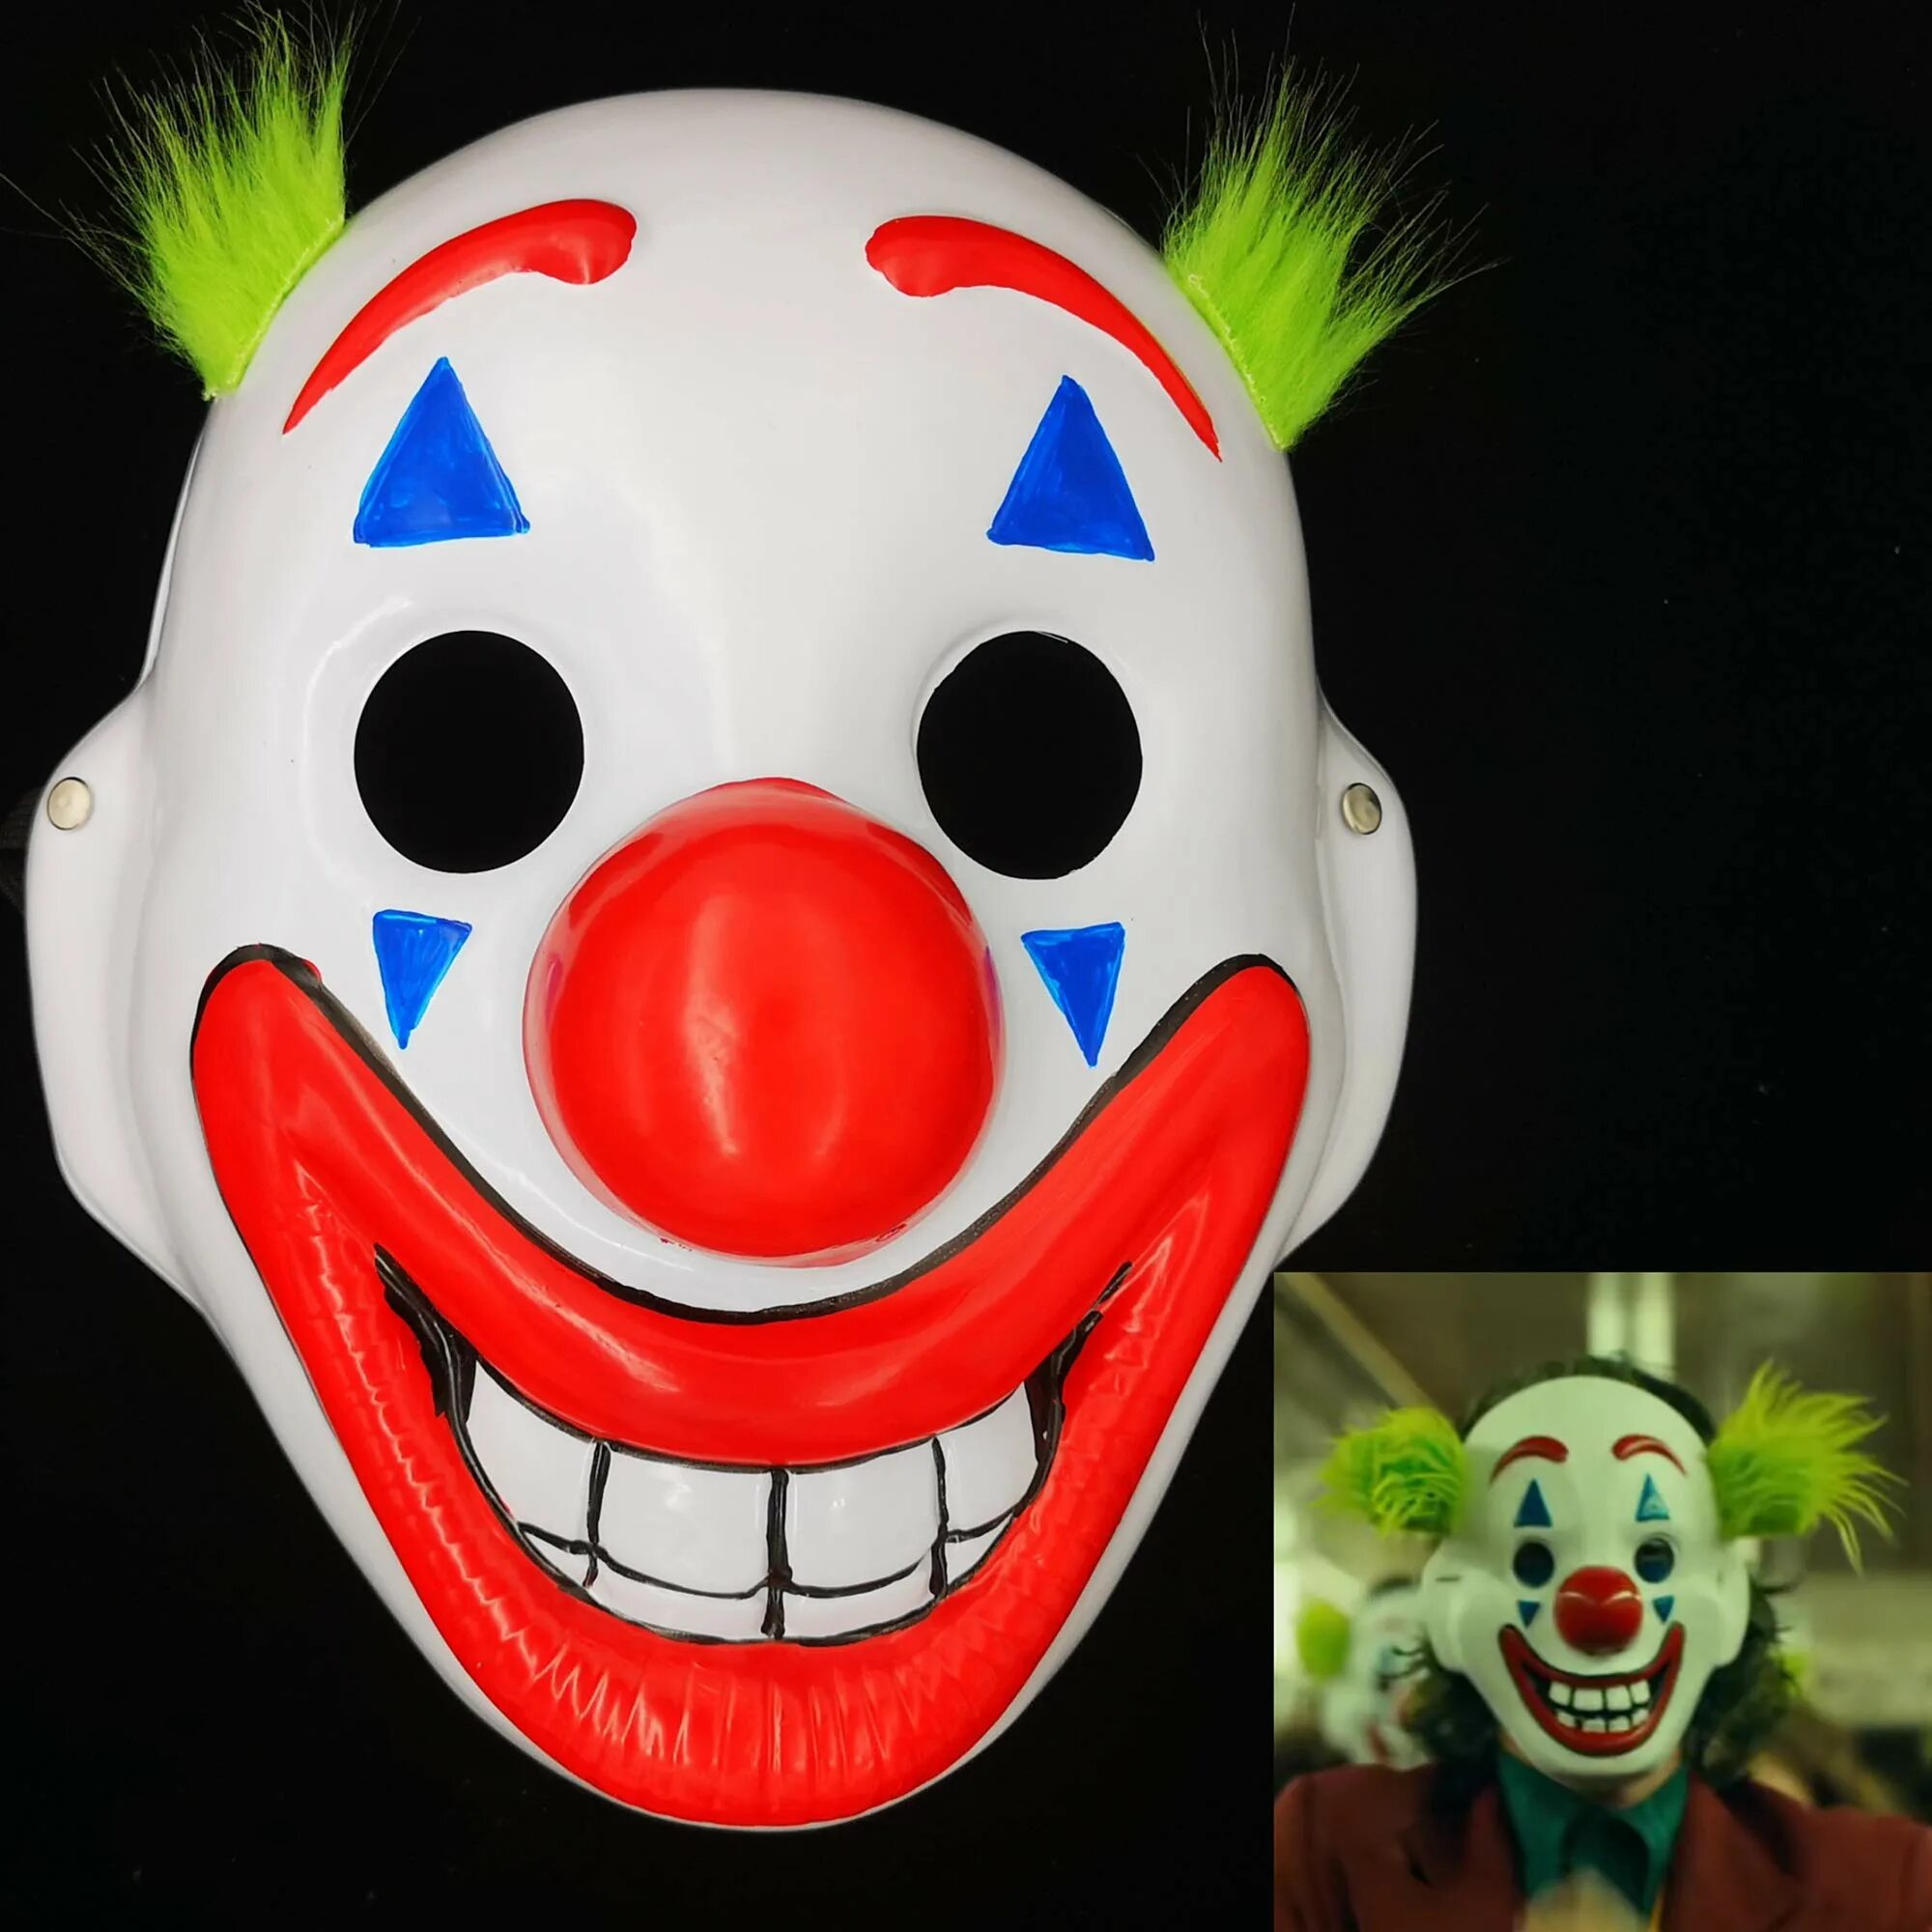 Клоунская маска Джокер 2019. Джокер в клоунской маске. Маска пластиковая "клоун". Маска клоуна дискорд